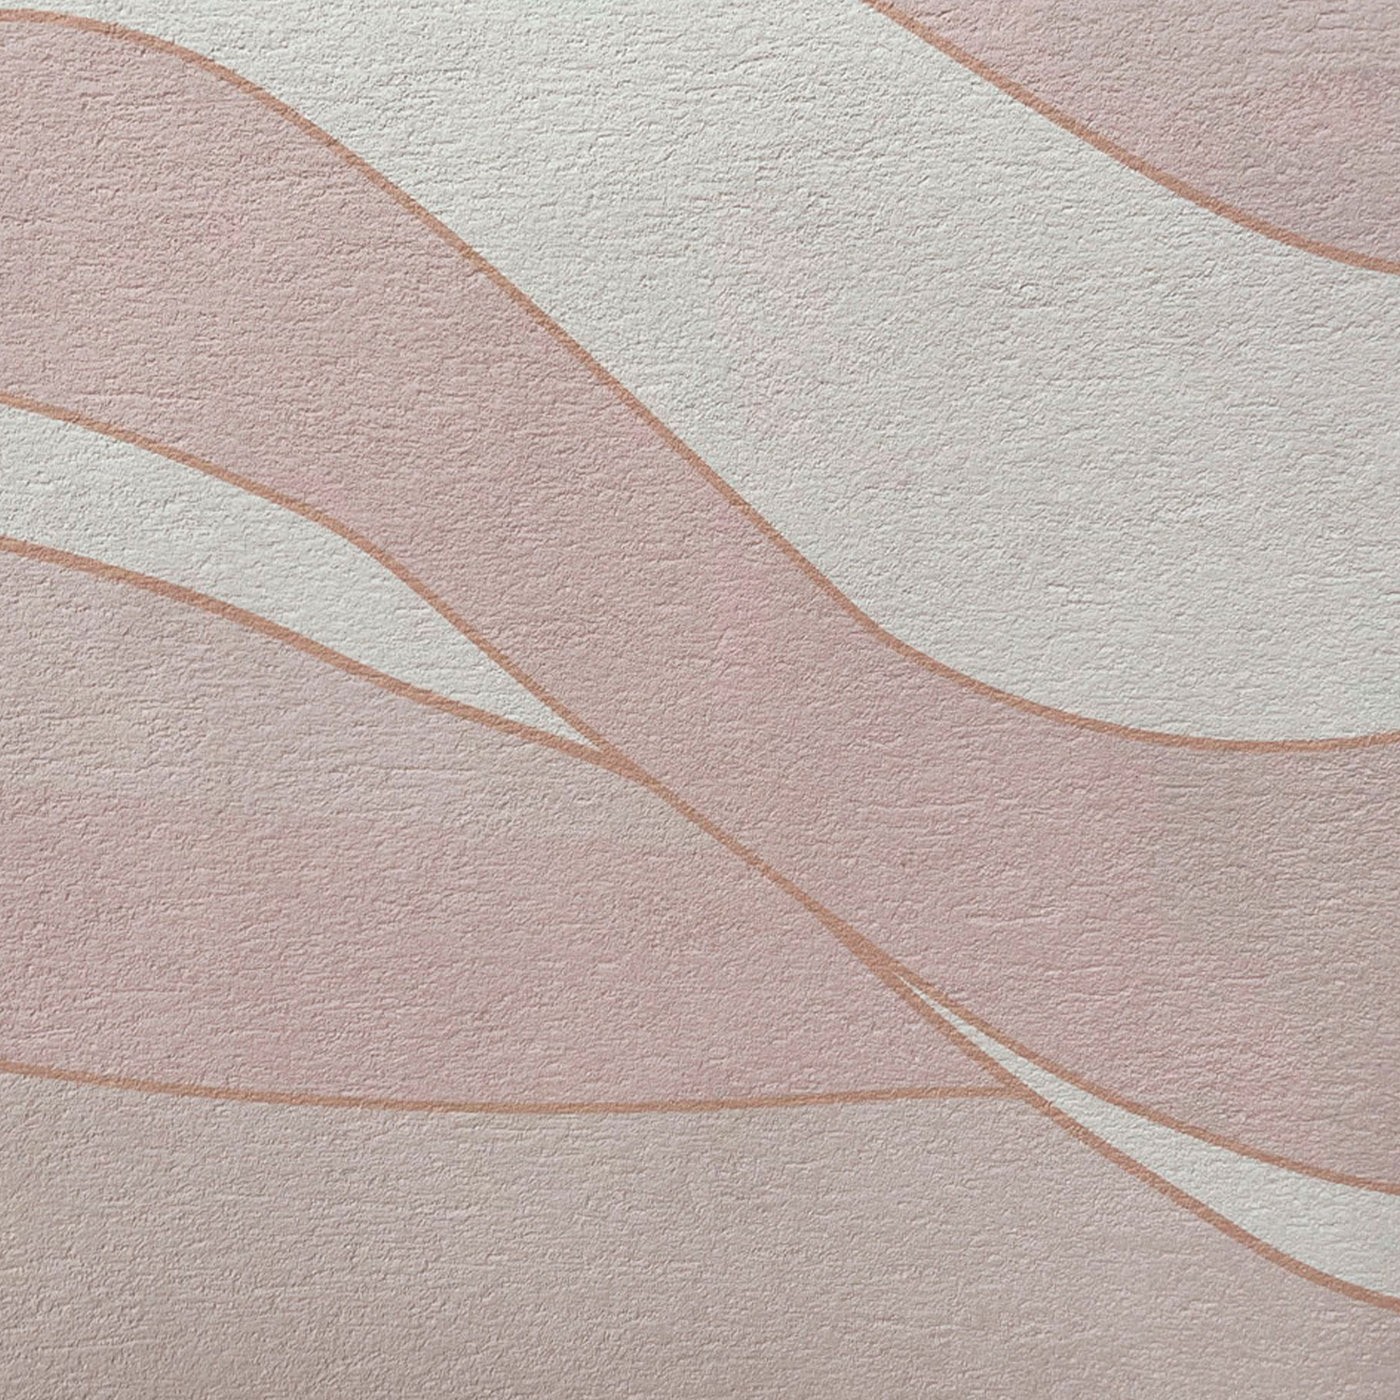 Pink Deep Wave textured wallpaper - Alternative view 1